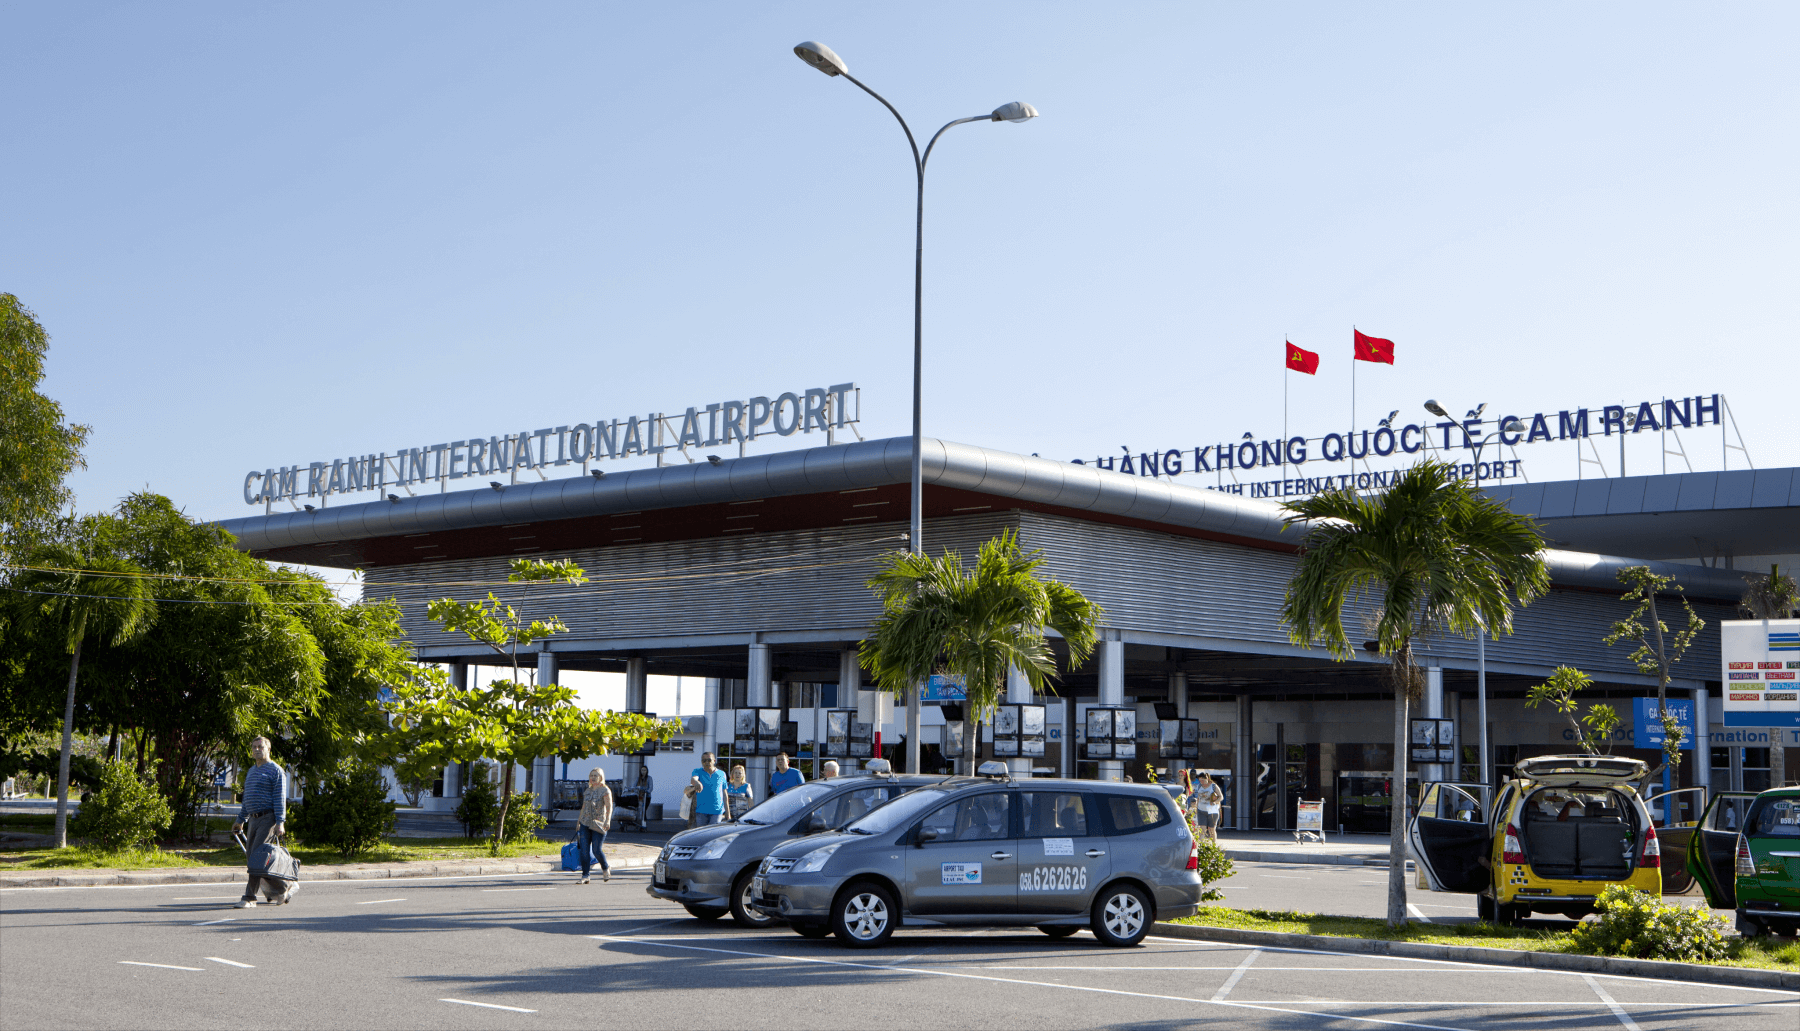 Cảng hàng không quốc tế Cam Ranh - điểm bay kết nối toàn cầu